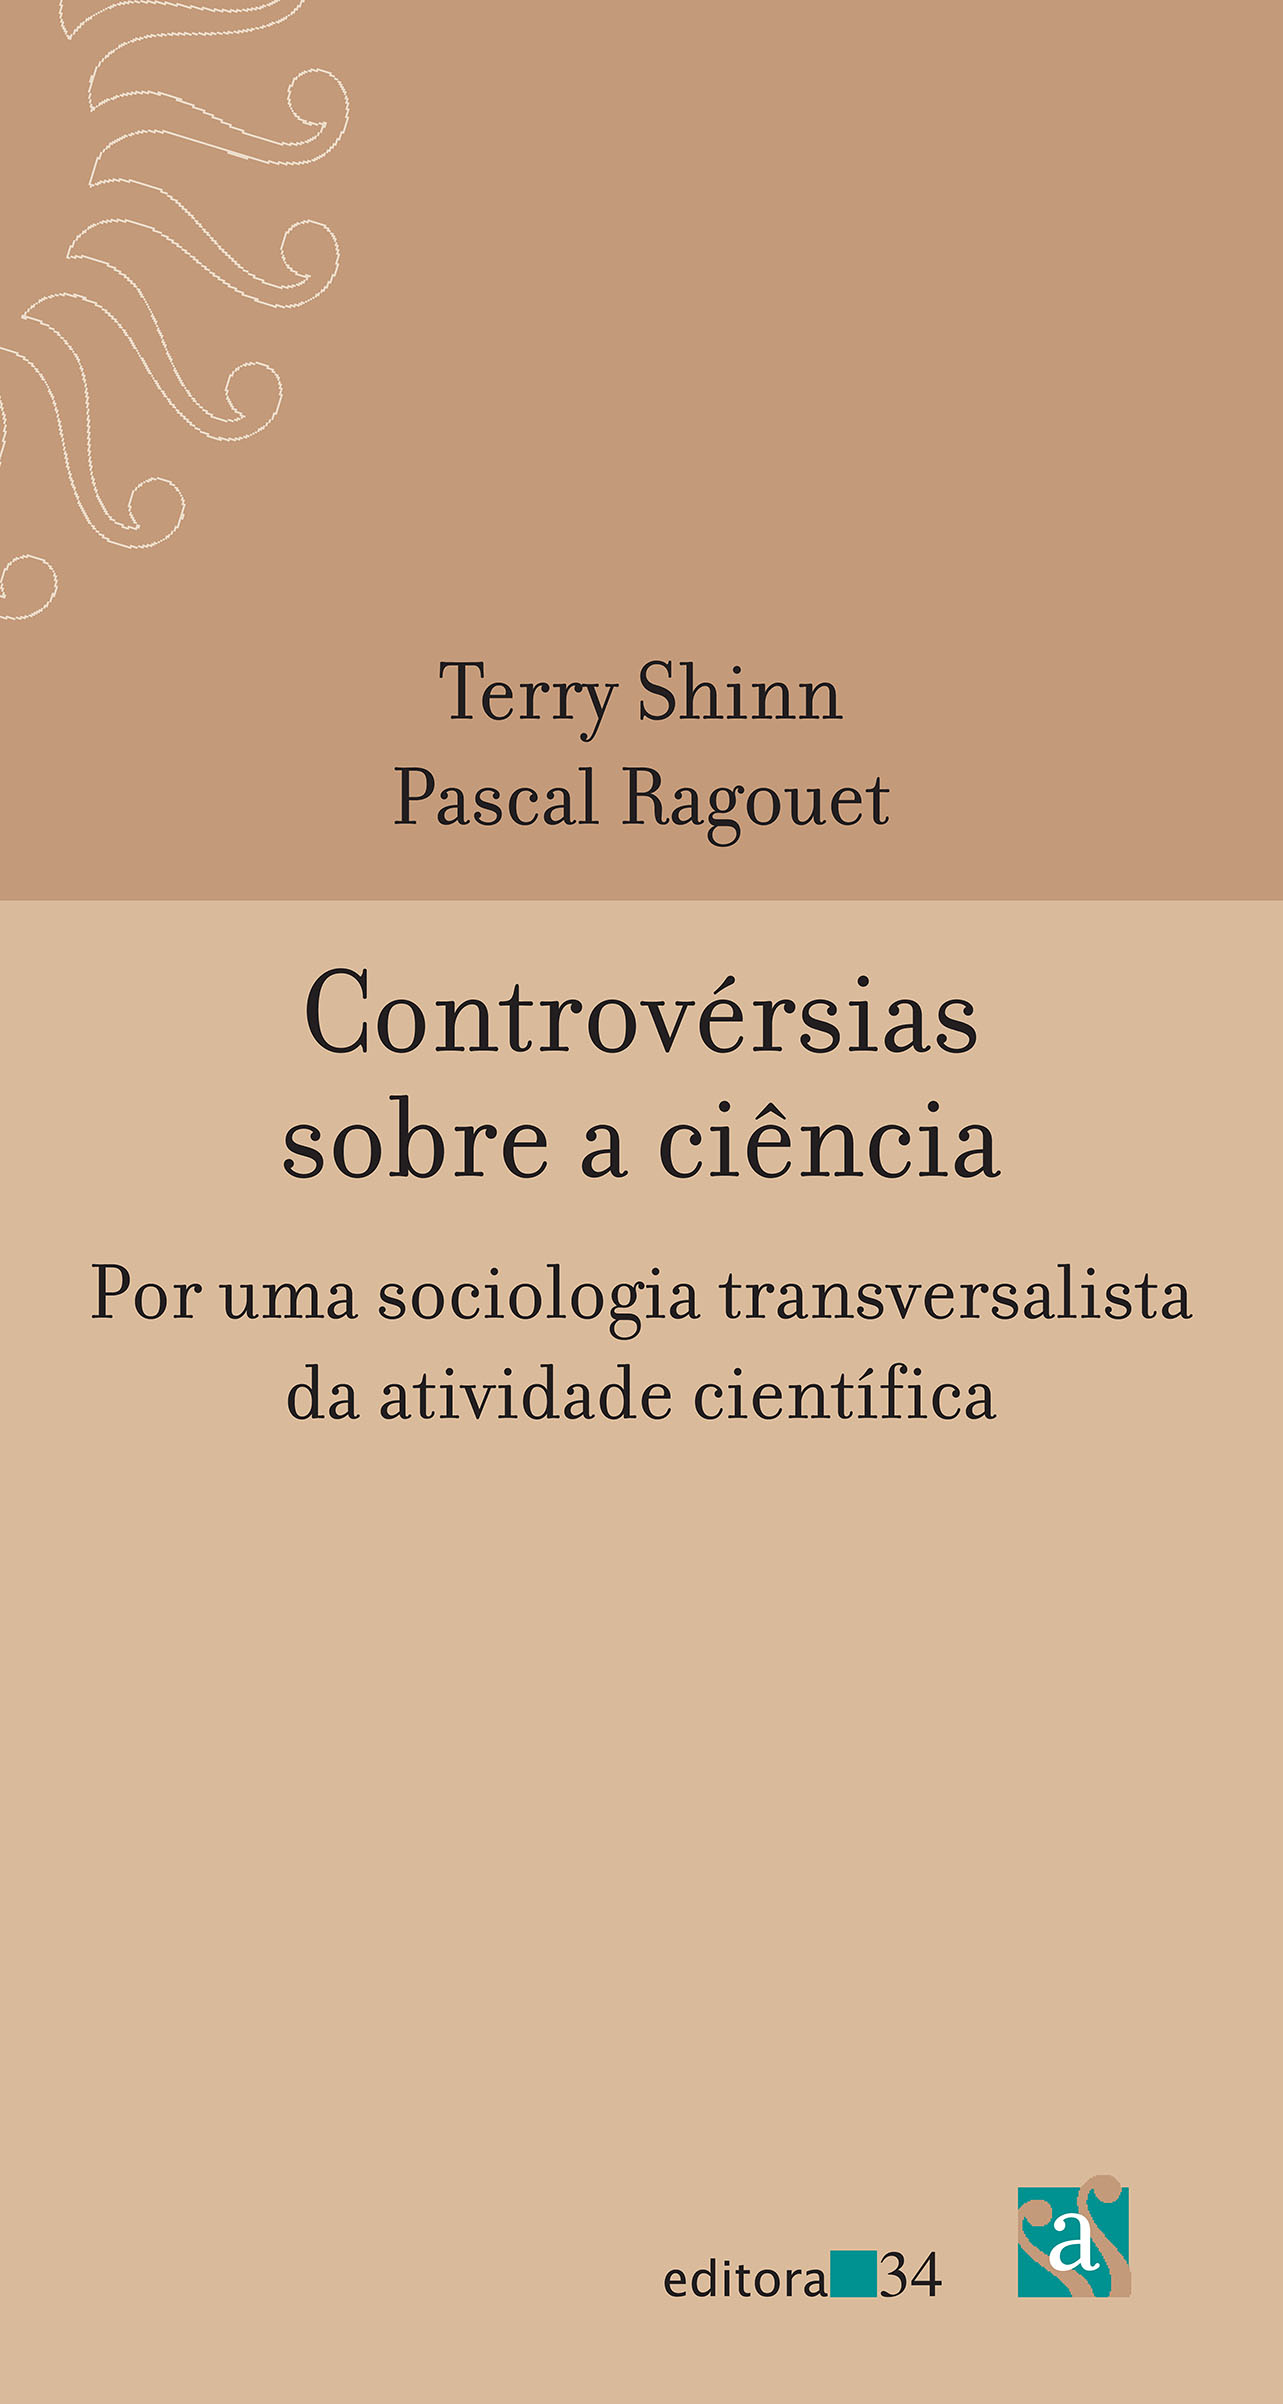 Capa de Controvérsias sobre a ciência, por uma sociologia transversalista de atividade científica, de Terry Shinn e Pascal Ragouet.